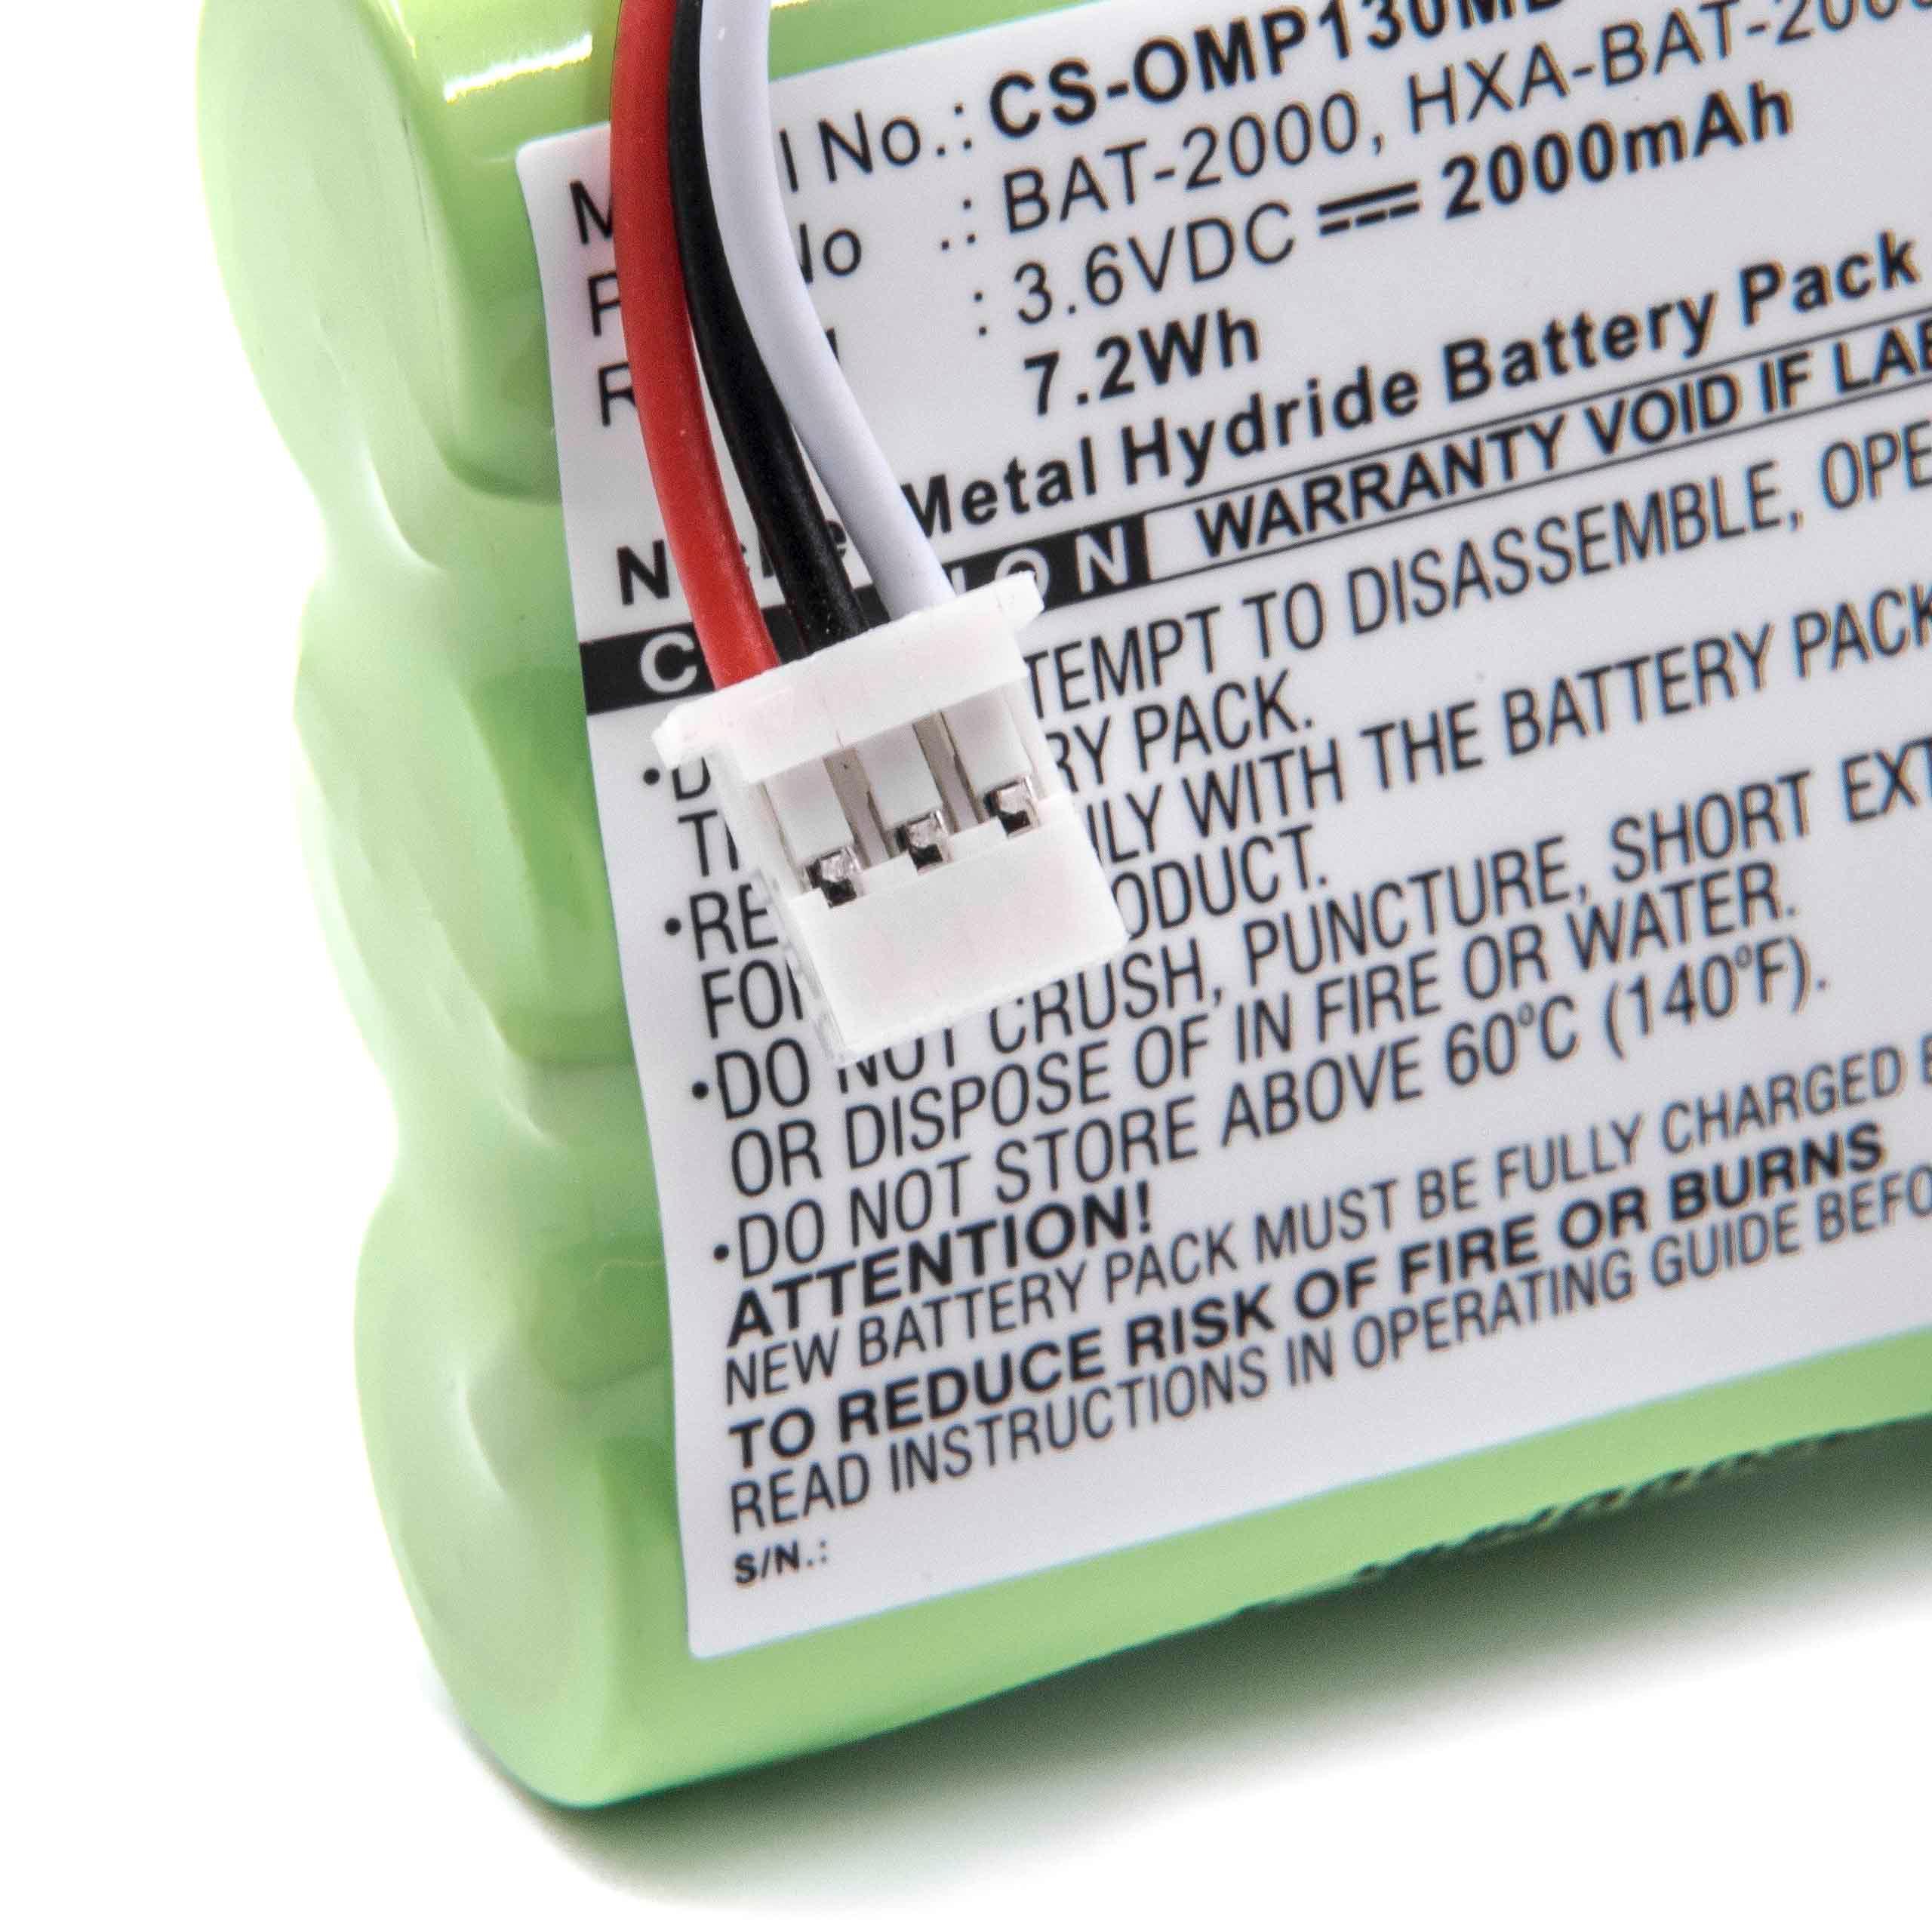 Batterie remplace Omron BAT-2000 pour appareil médical - 2000mAh 3,6V NiMH